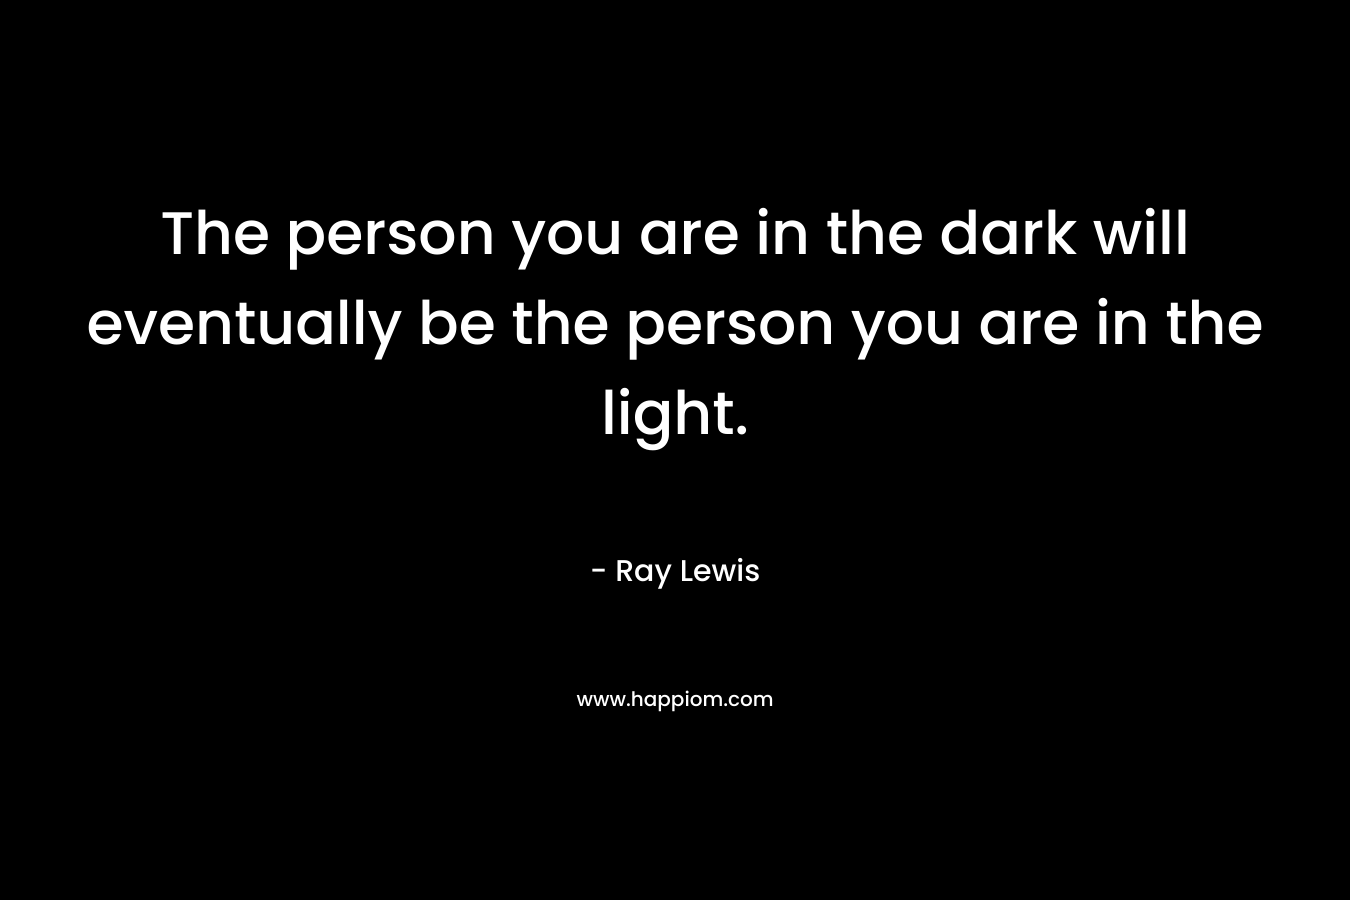 The person you are in the dark will eventually be the person you are in the light.